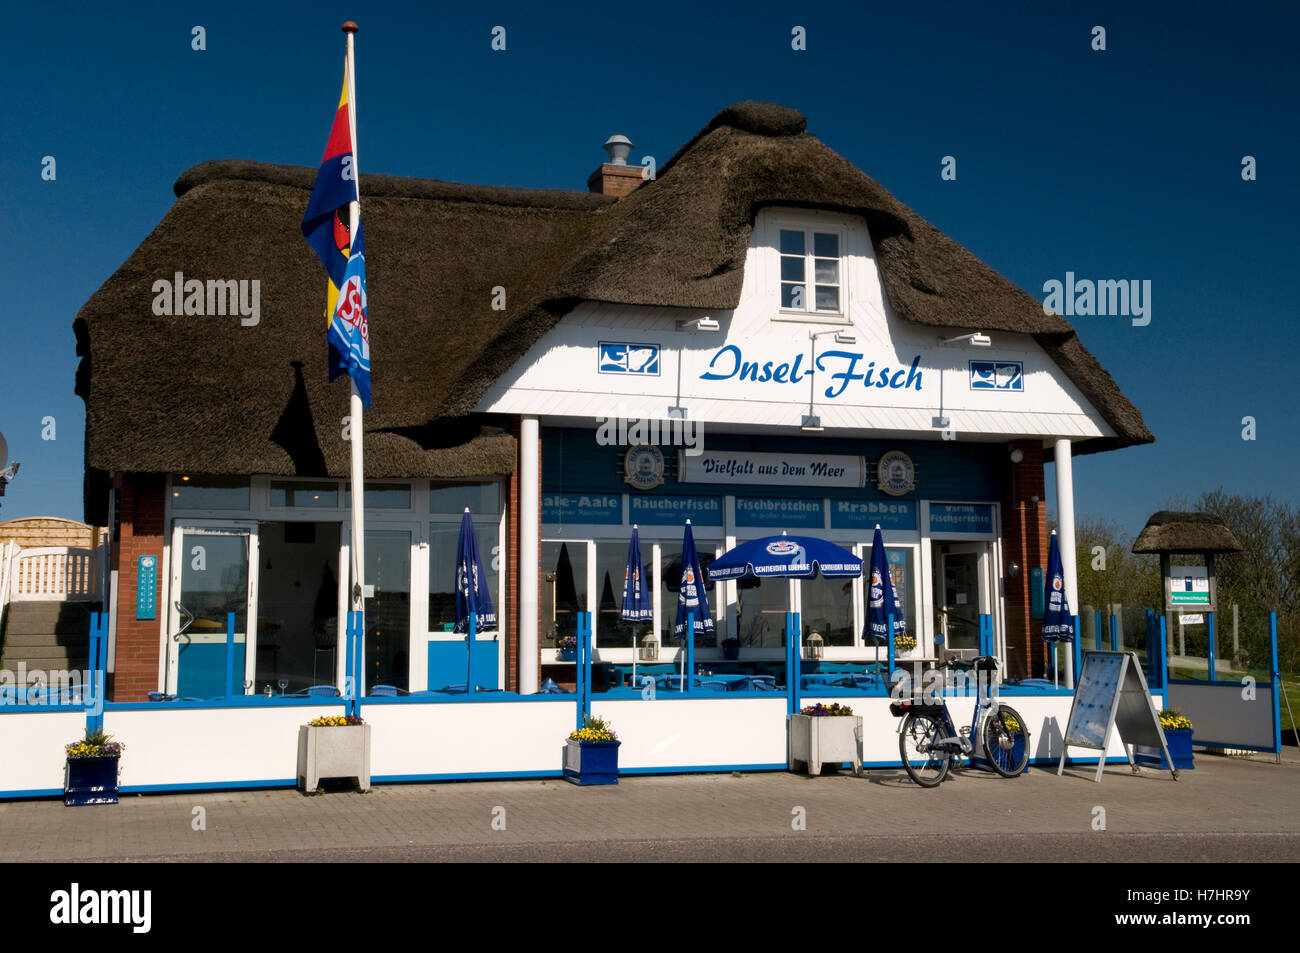 Thatched house, Insel-Fisch restaurant, Norderhafen harbor, Nordstrand island, Schleswig-Holstein Stock Photo